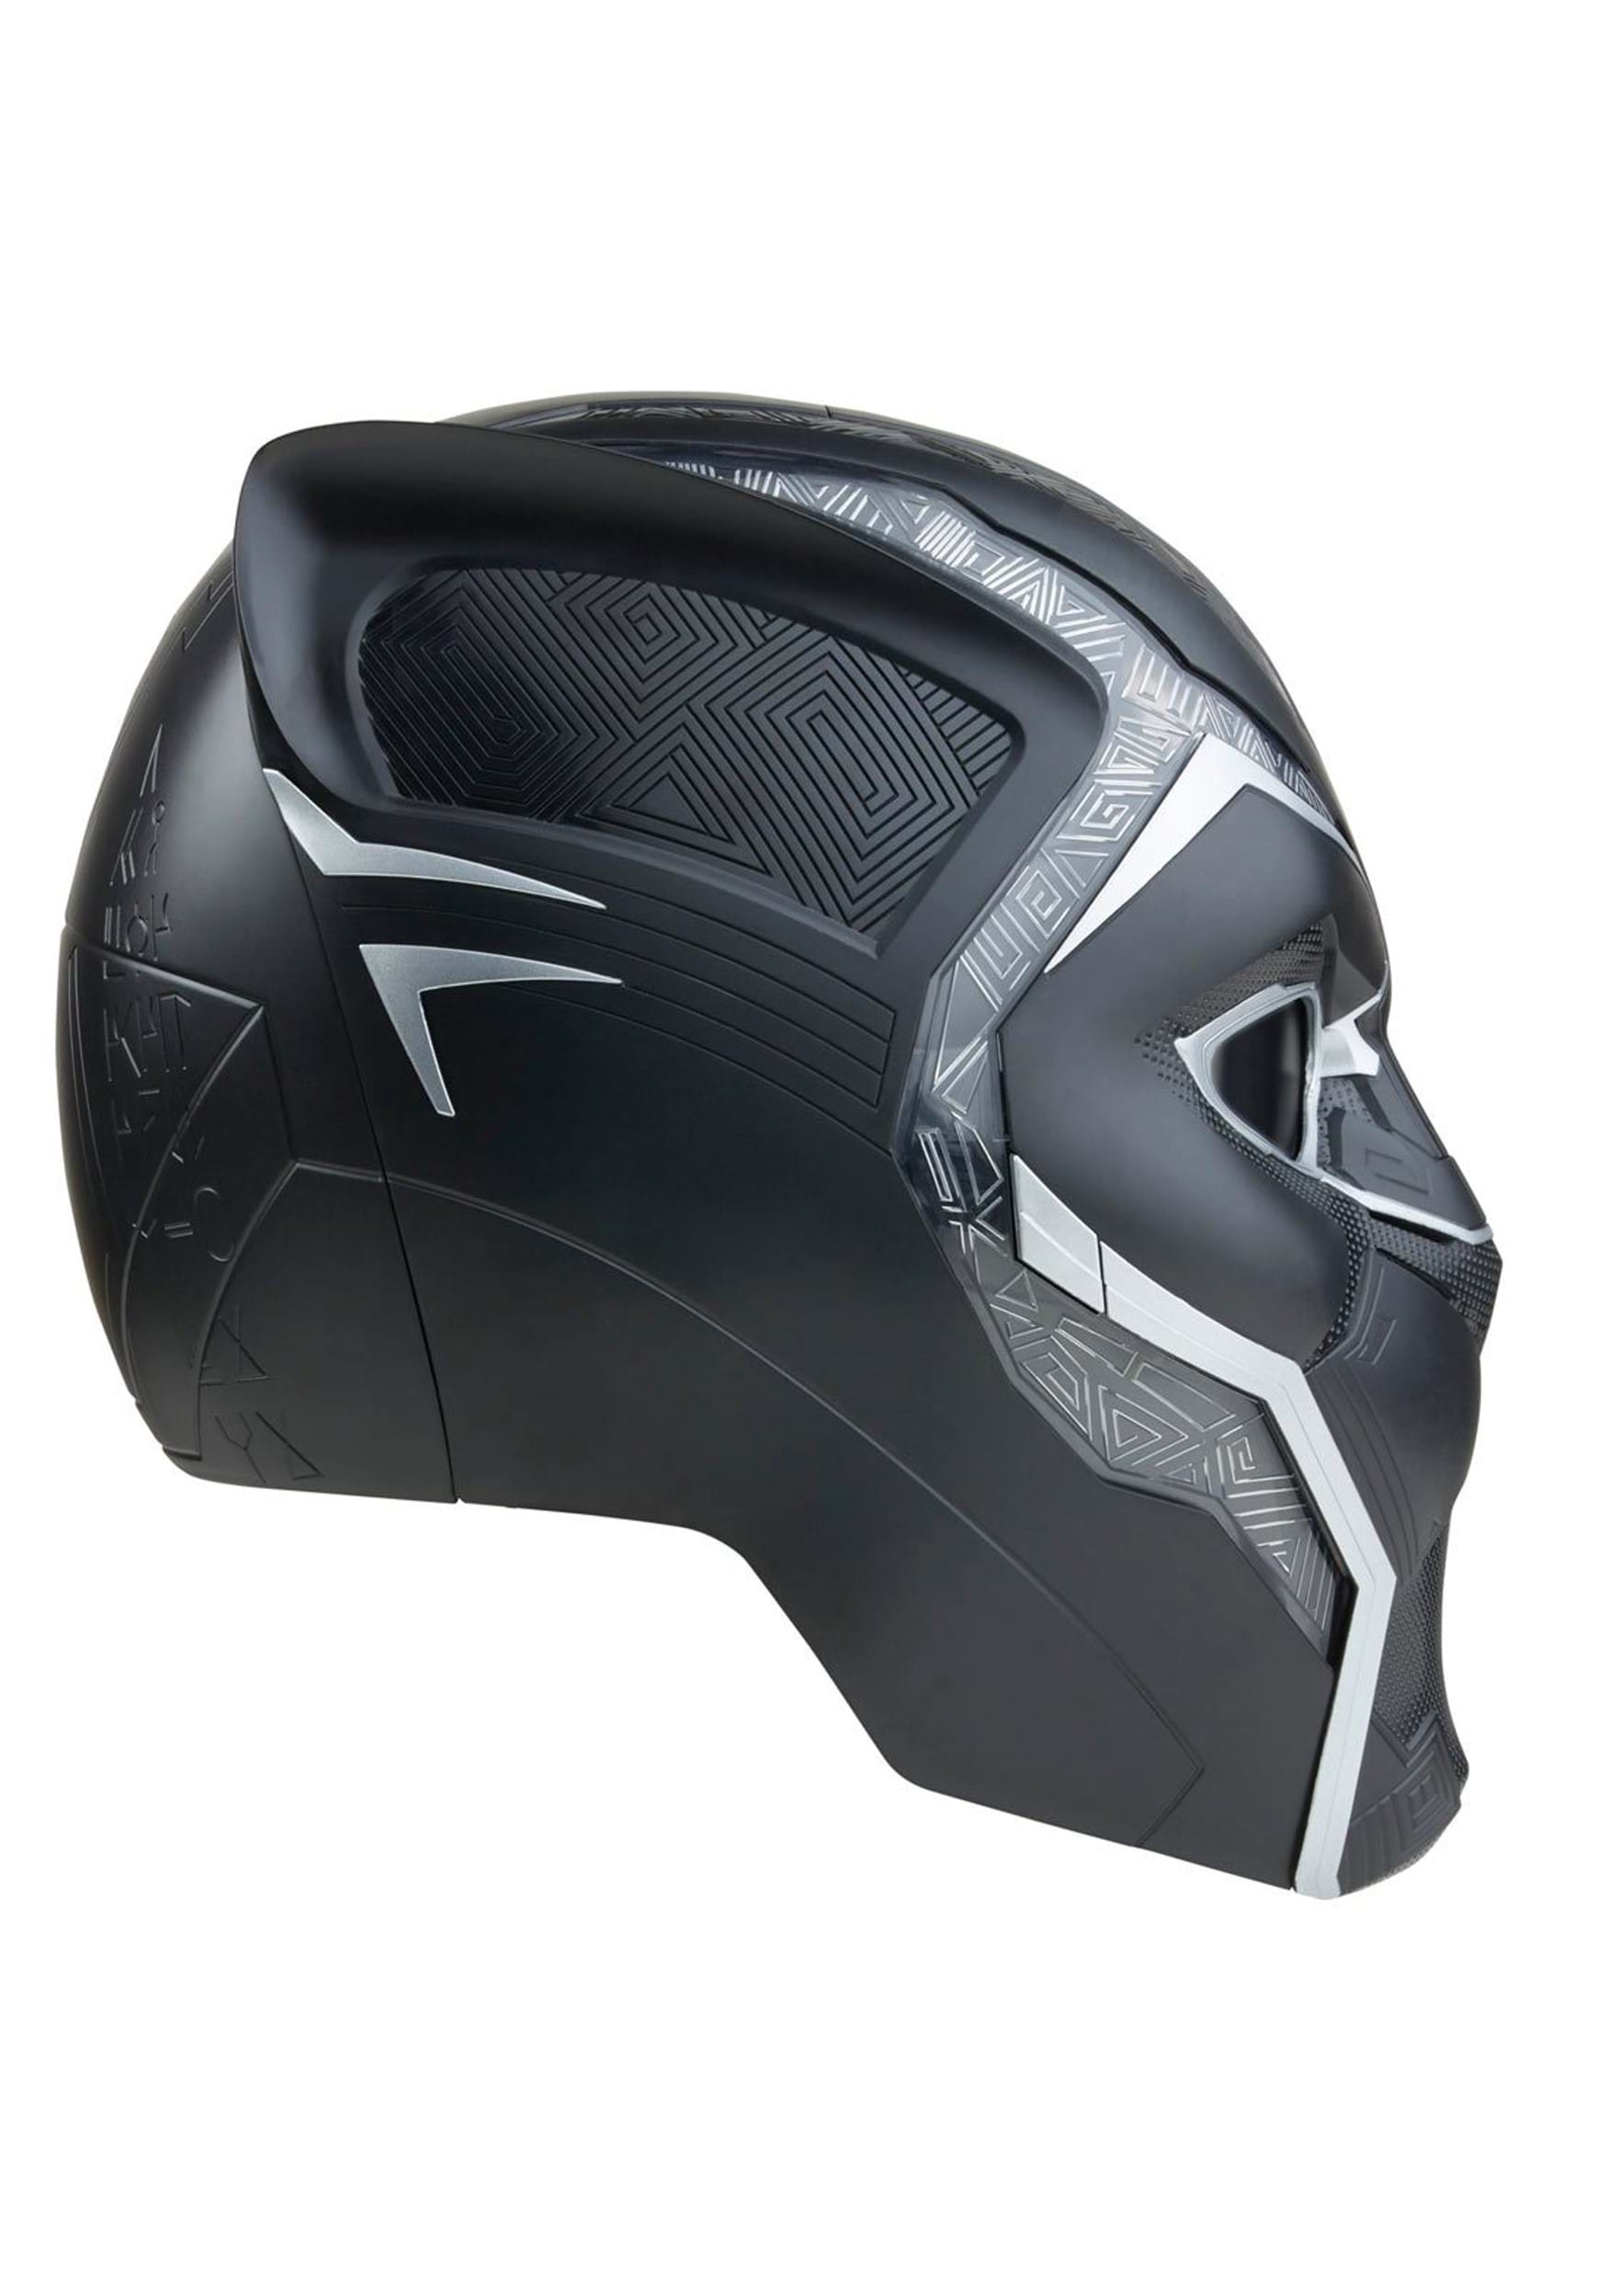 Black Panther Marvel Legends Prop Replica Helmet